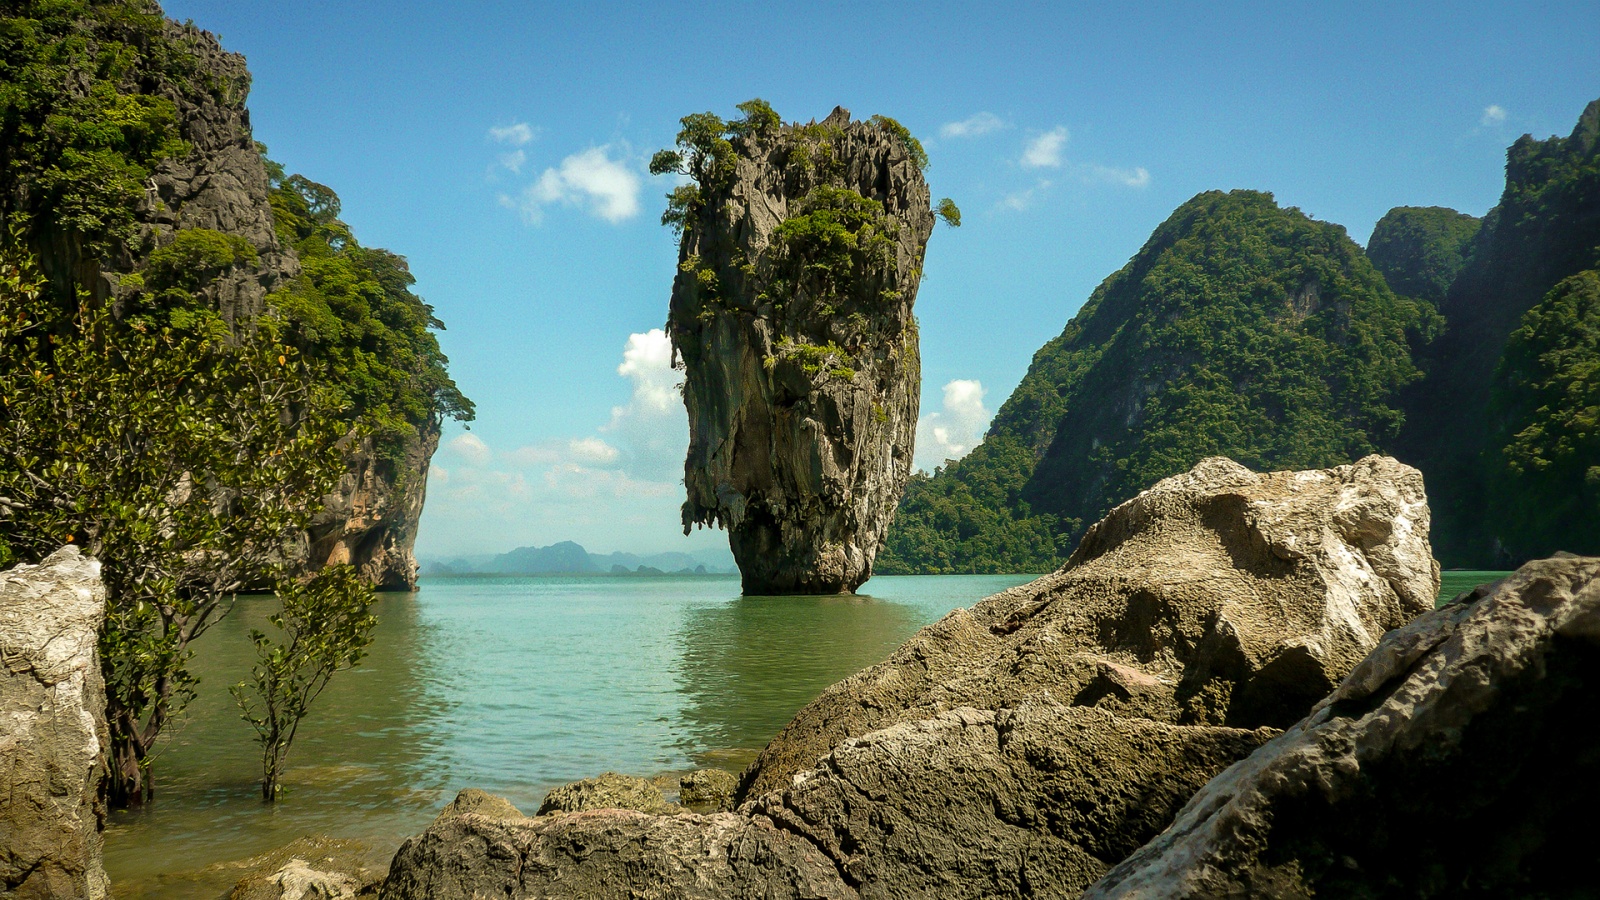 Таинственные пещеры и райские острова — экскурсия на остров джеймса бонда в тайланде